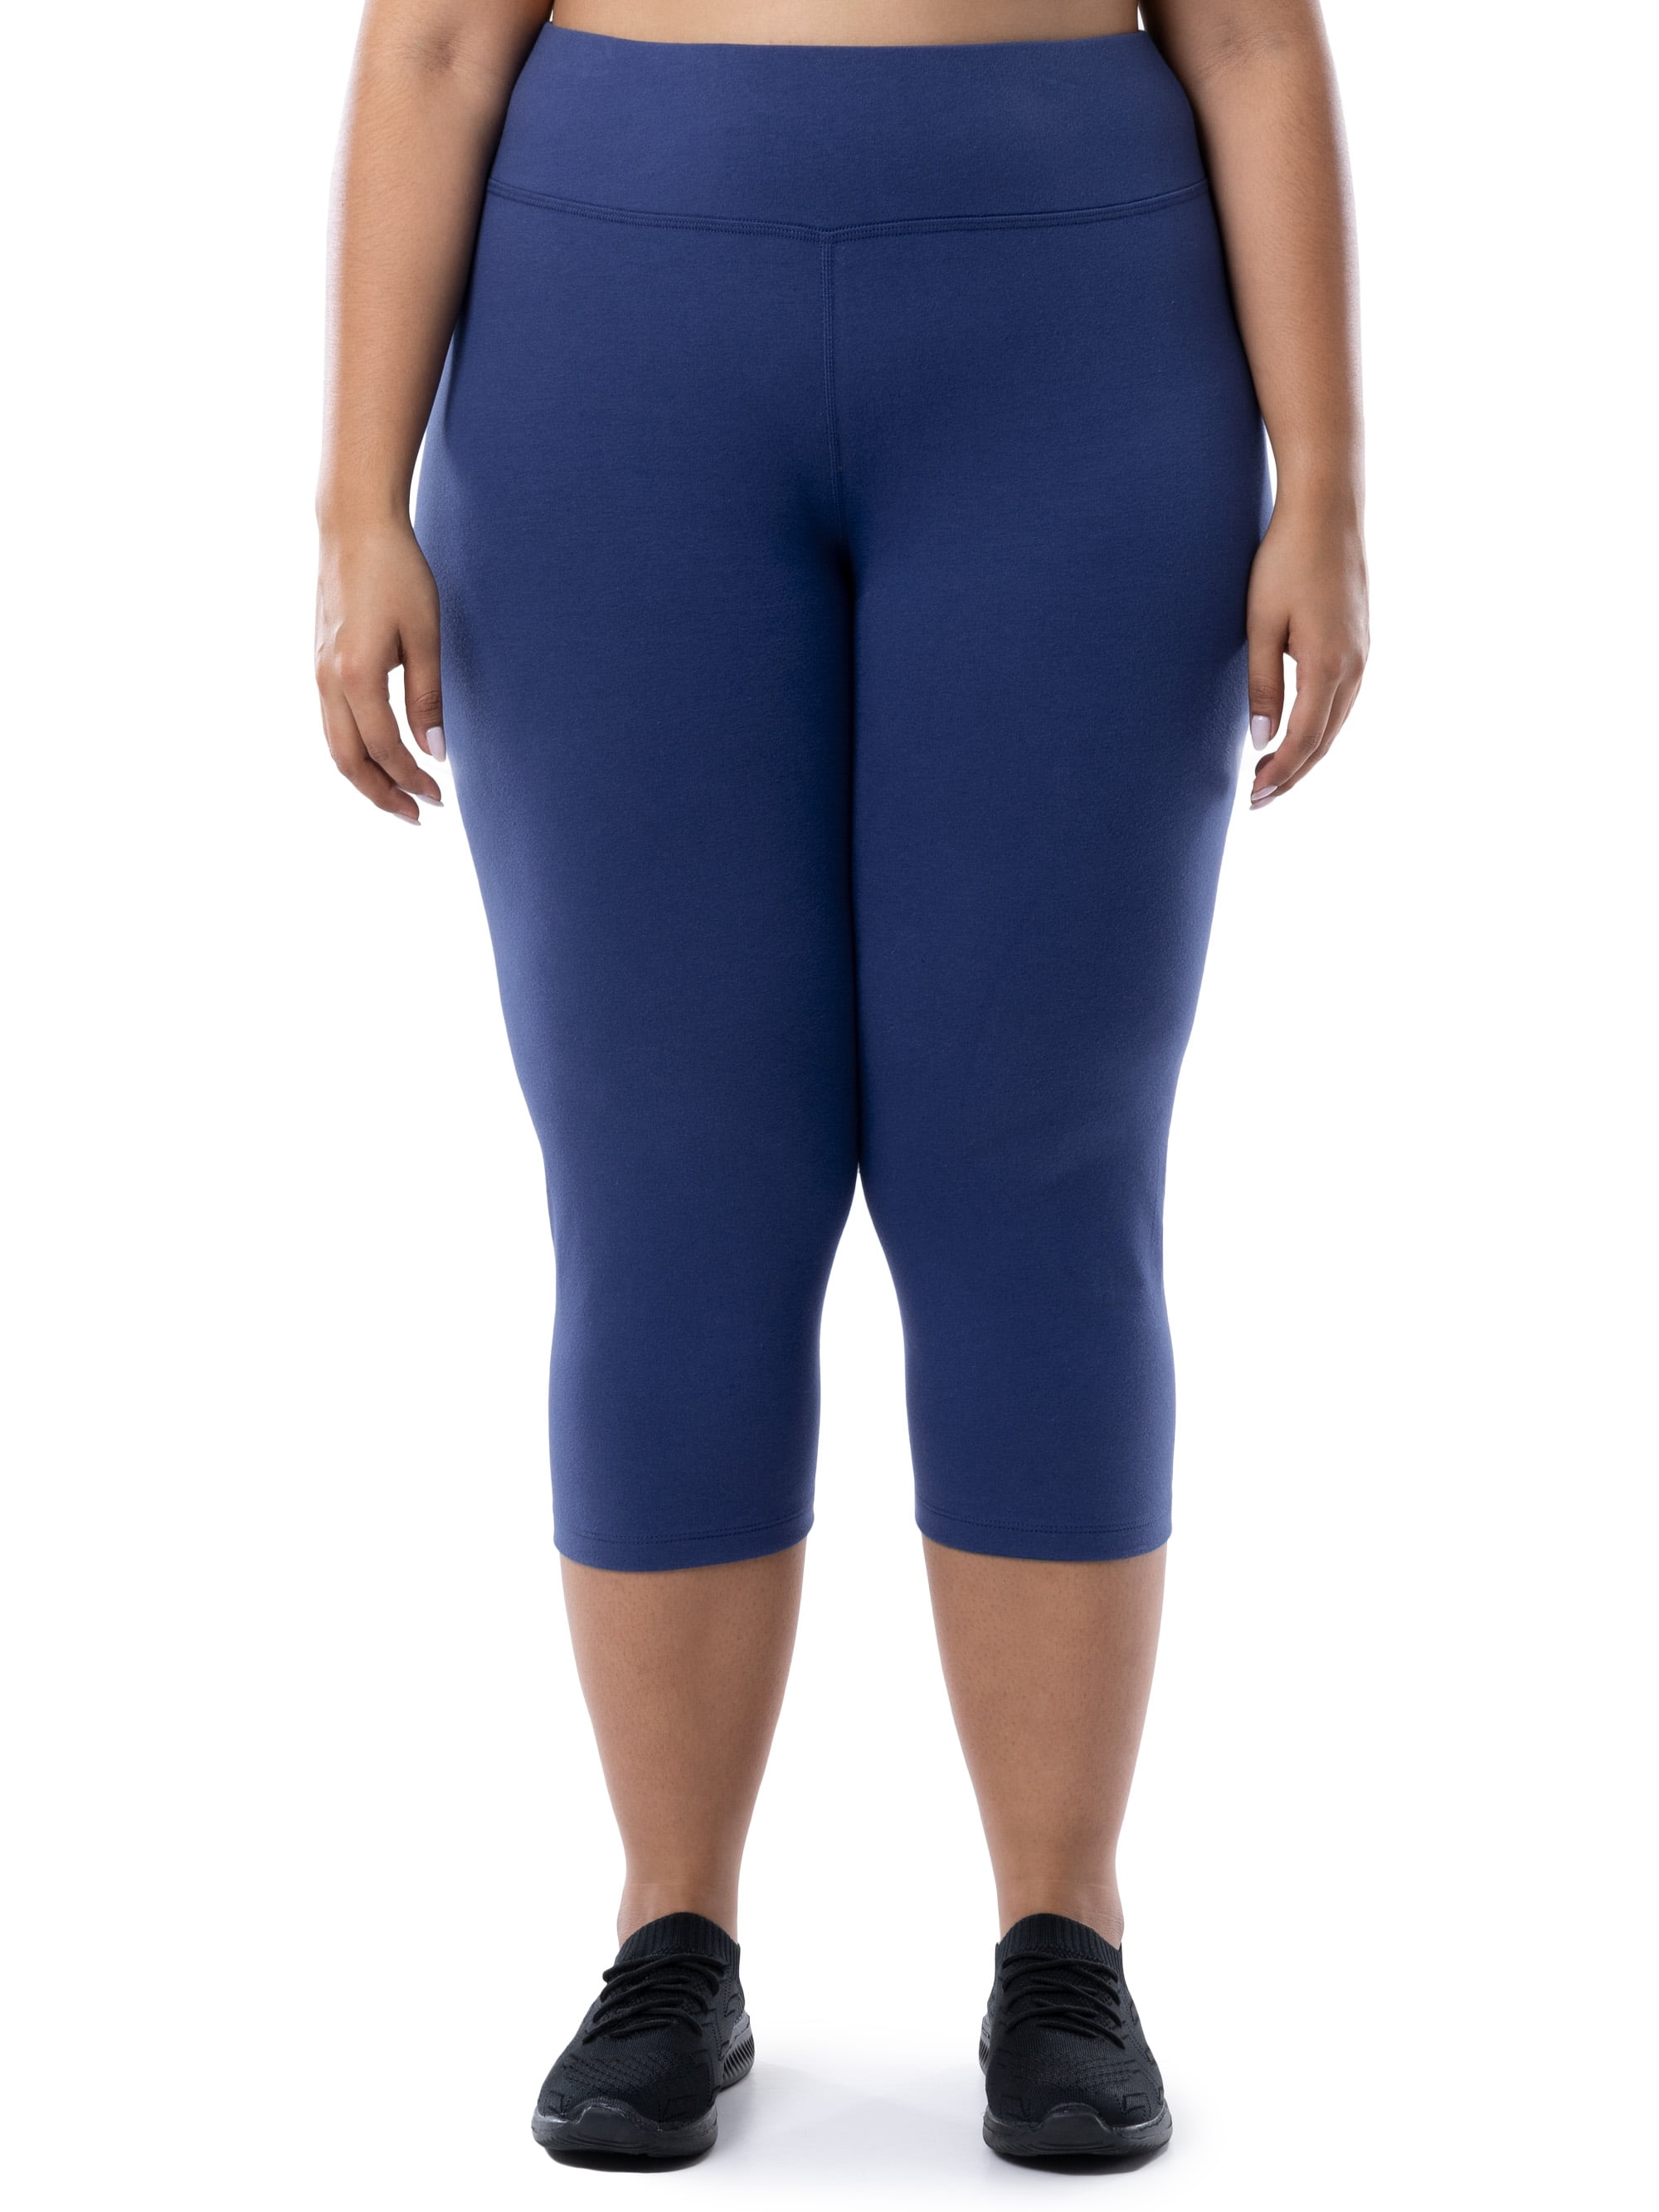 Lexi Plus Size Activewear Jogger Pants– Hello Curve